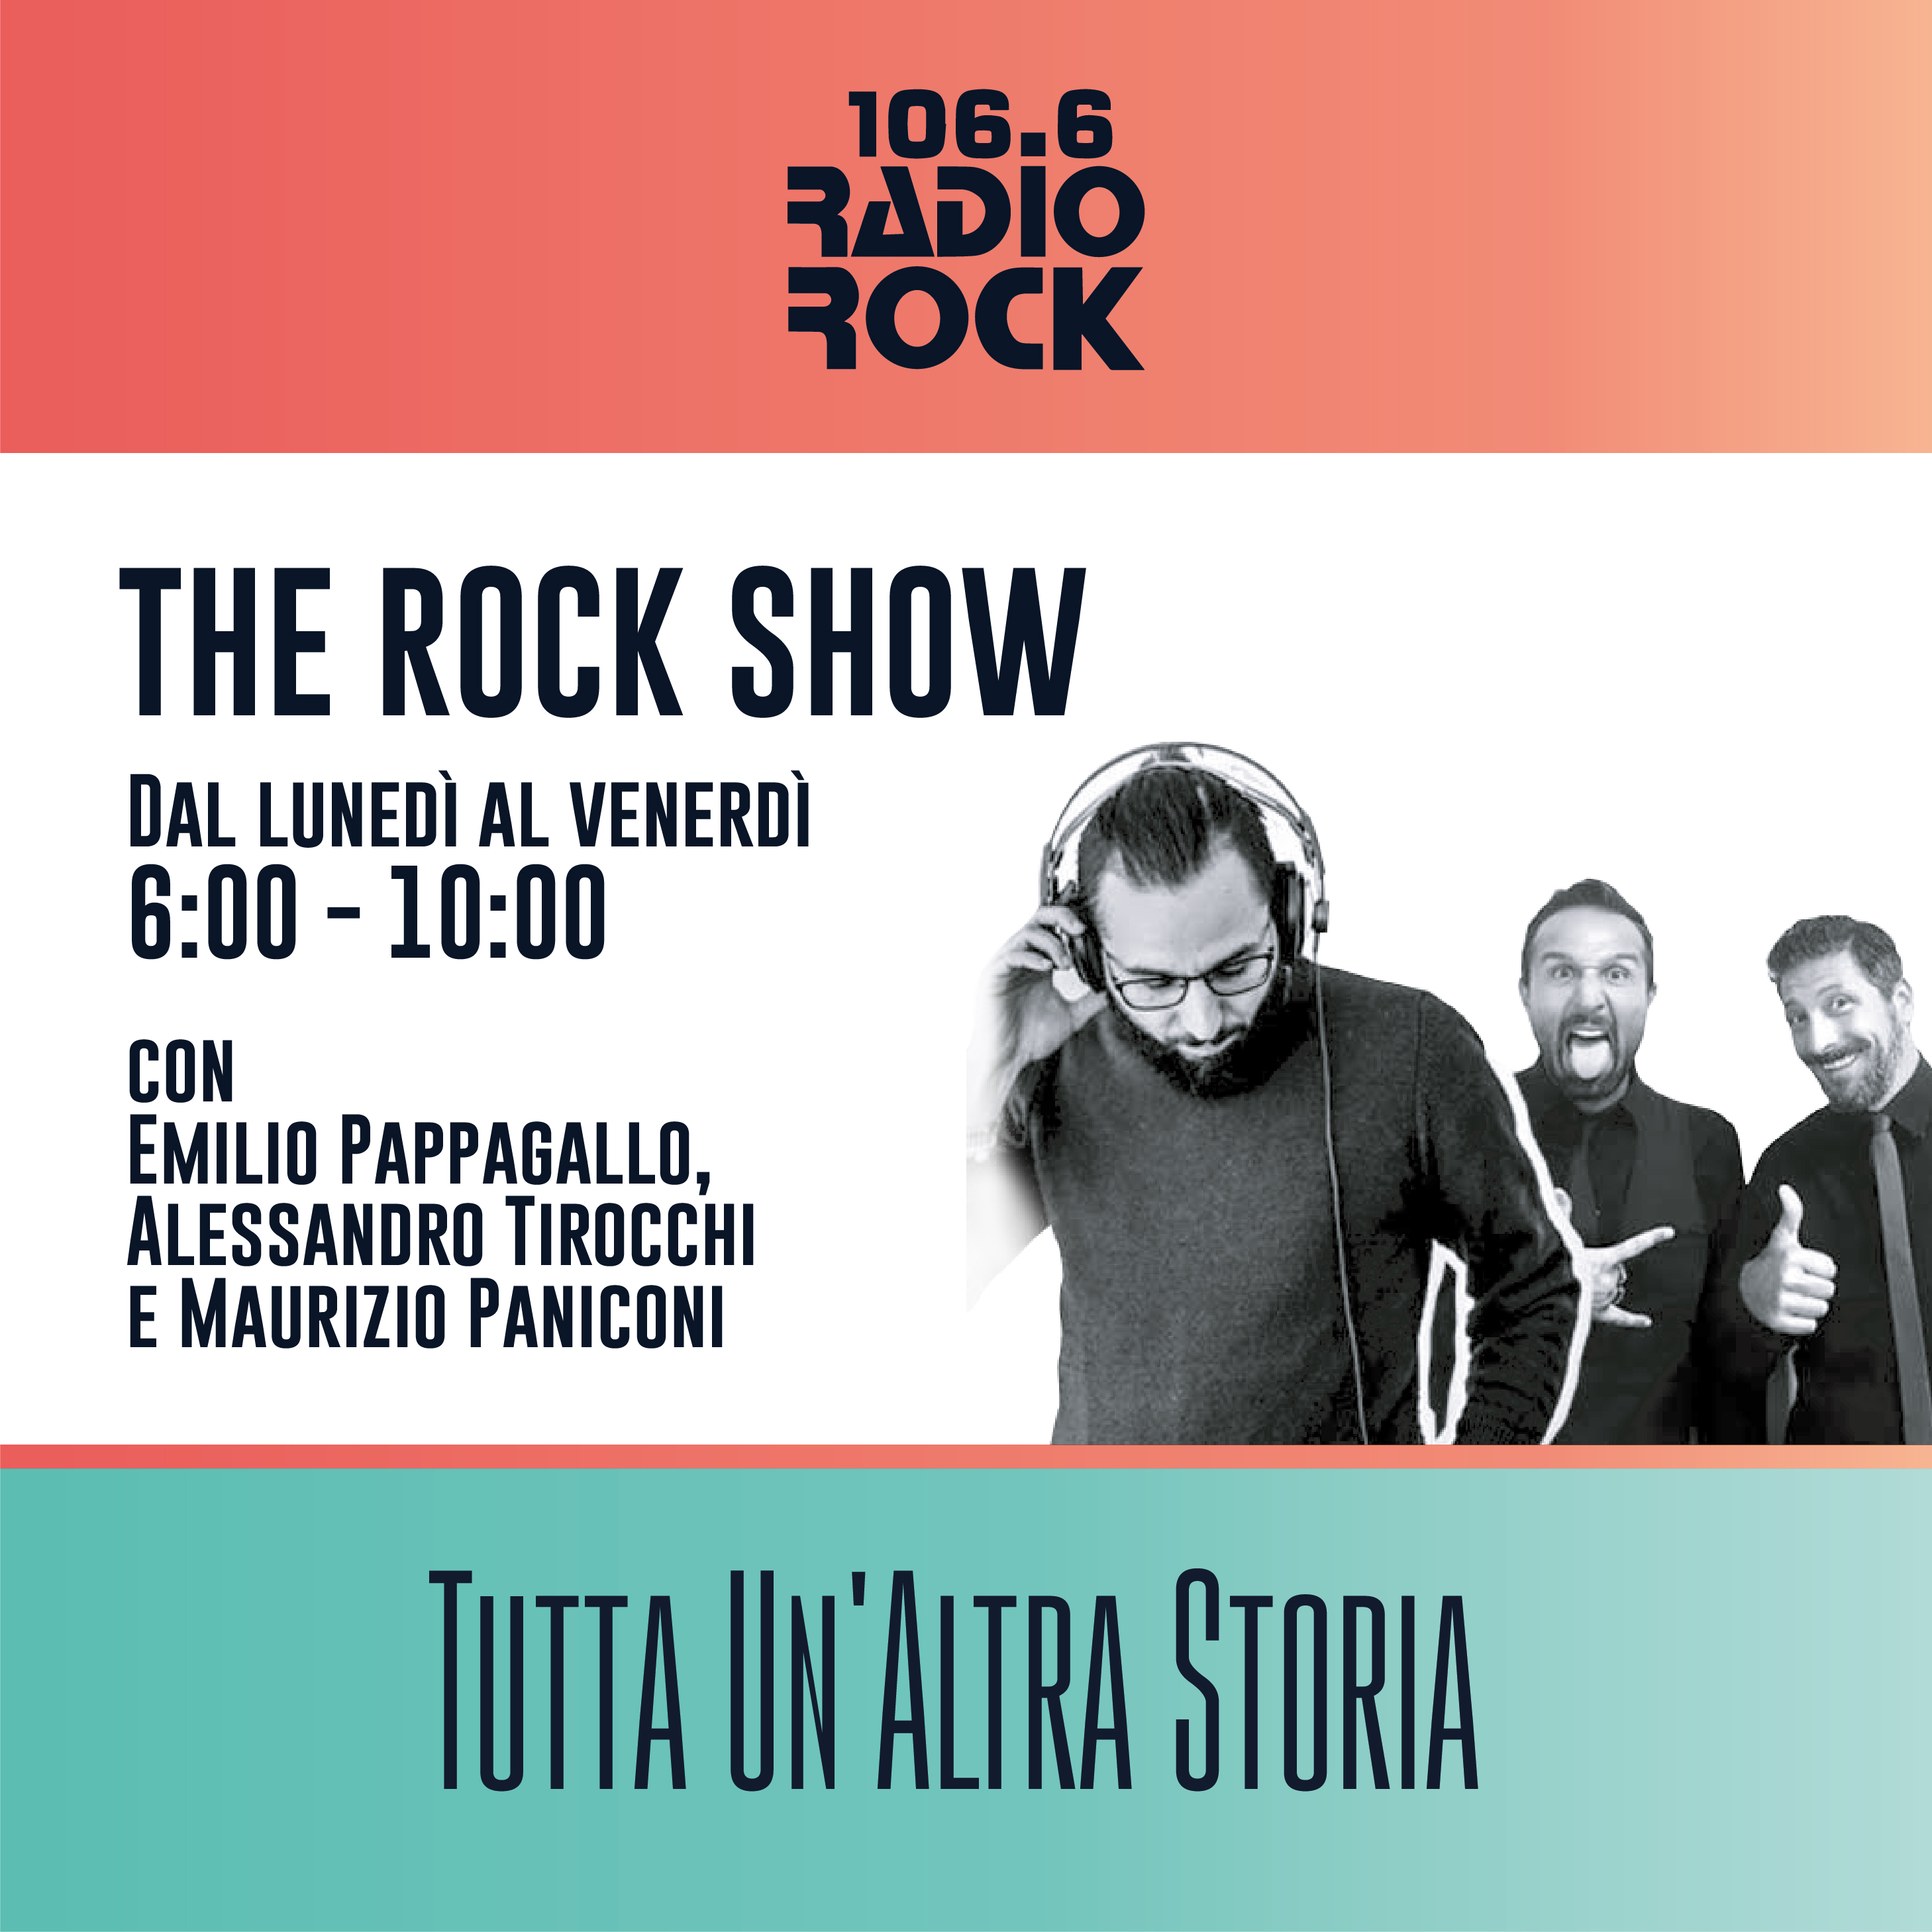 The Rock Show: Riformiamo lo spettacolo (27-10-20)